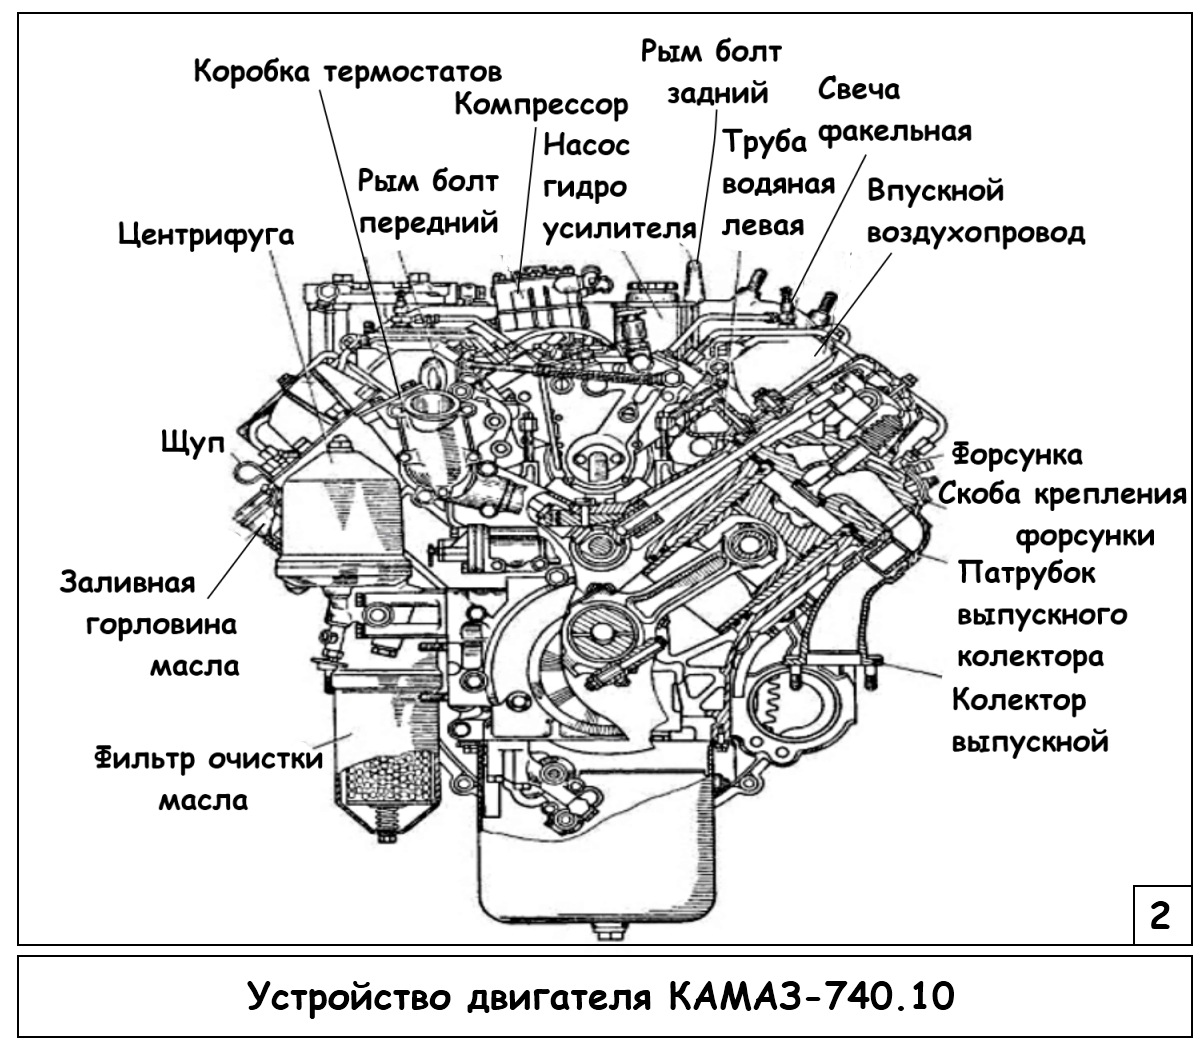 Устройство двигателя КАМАЗ 740 